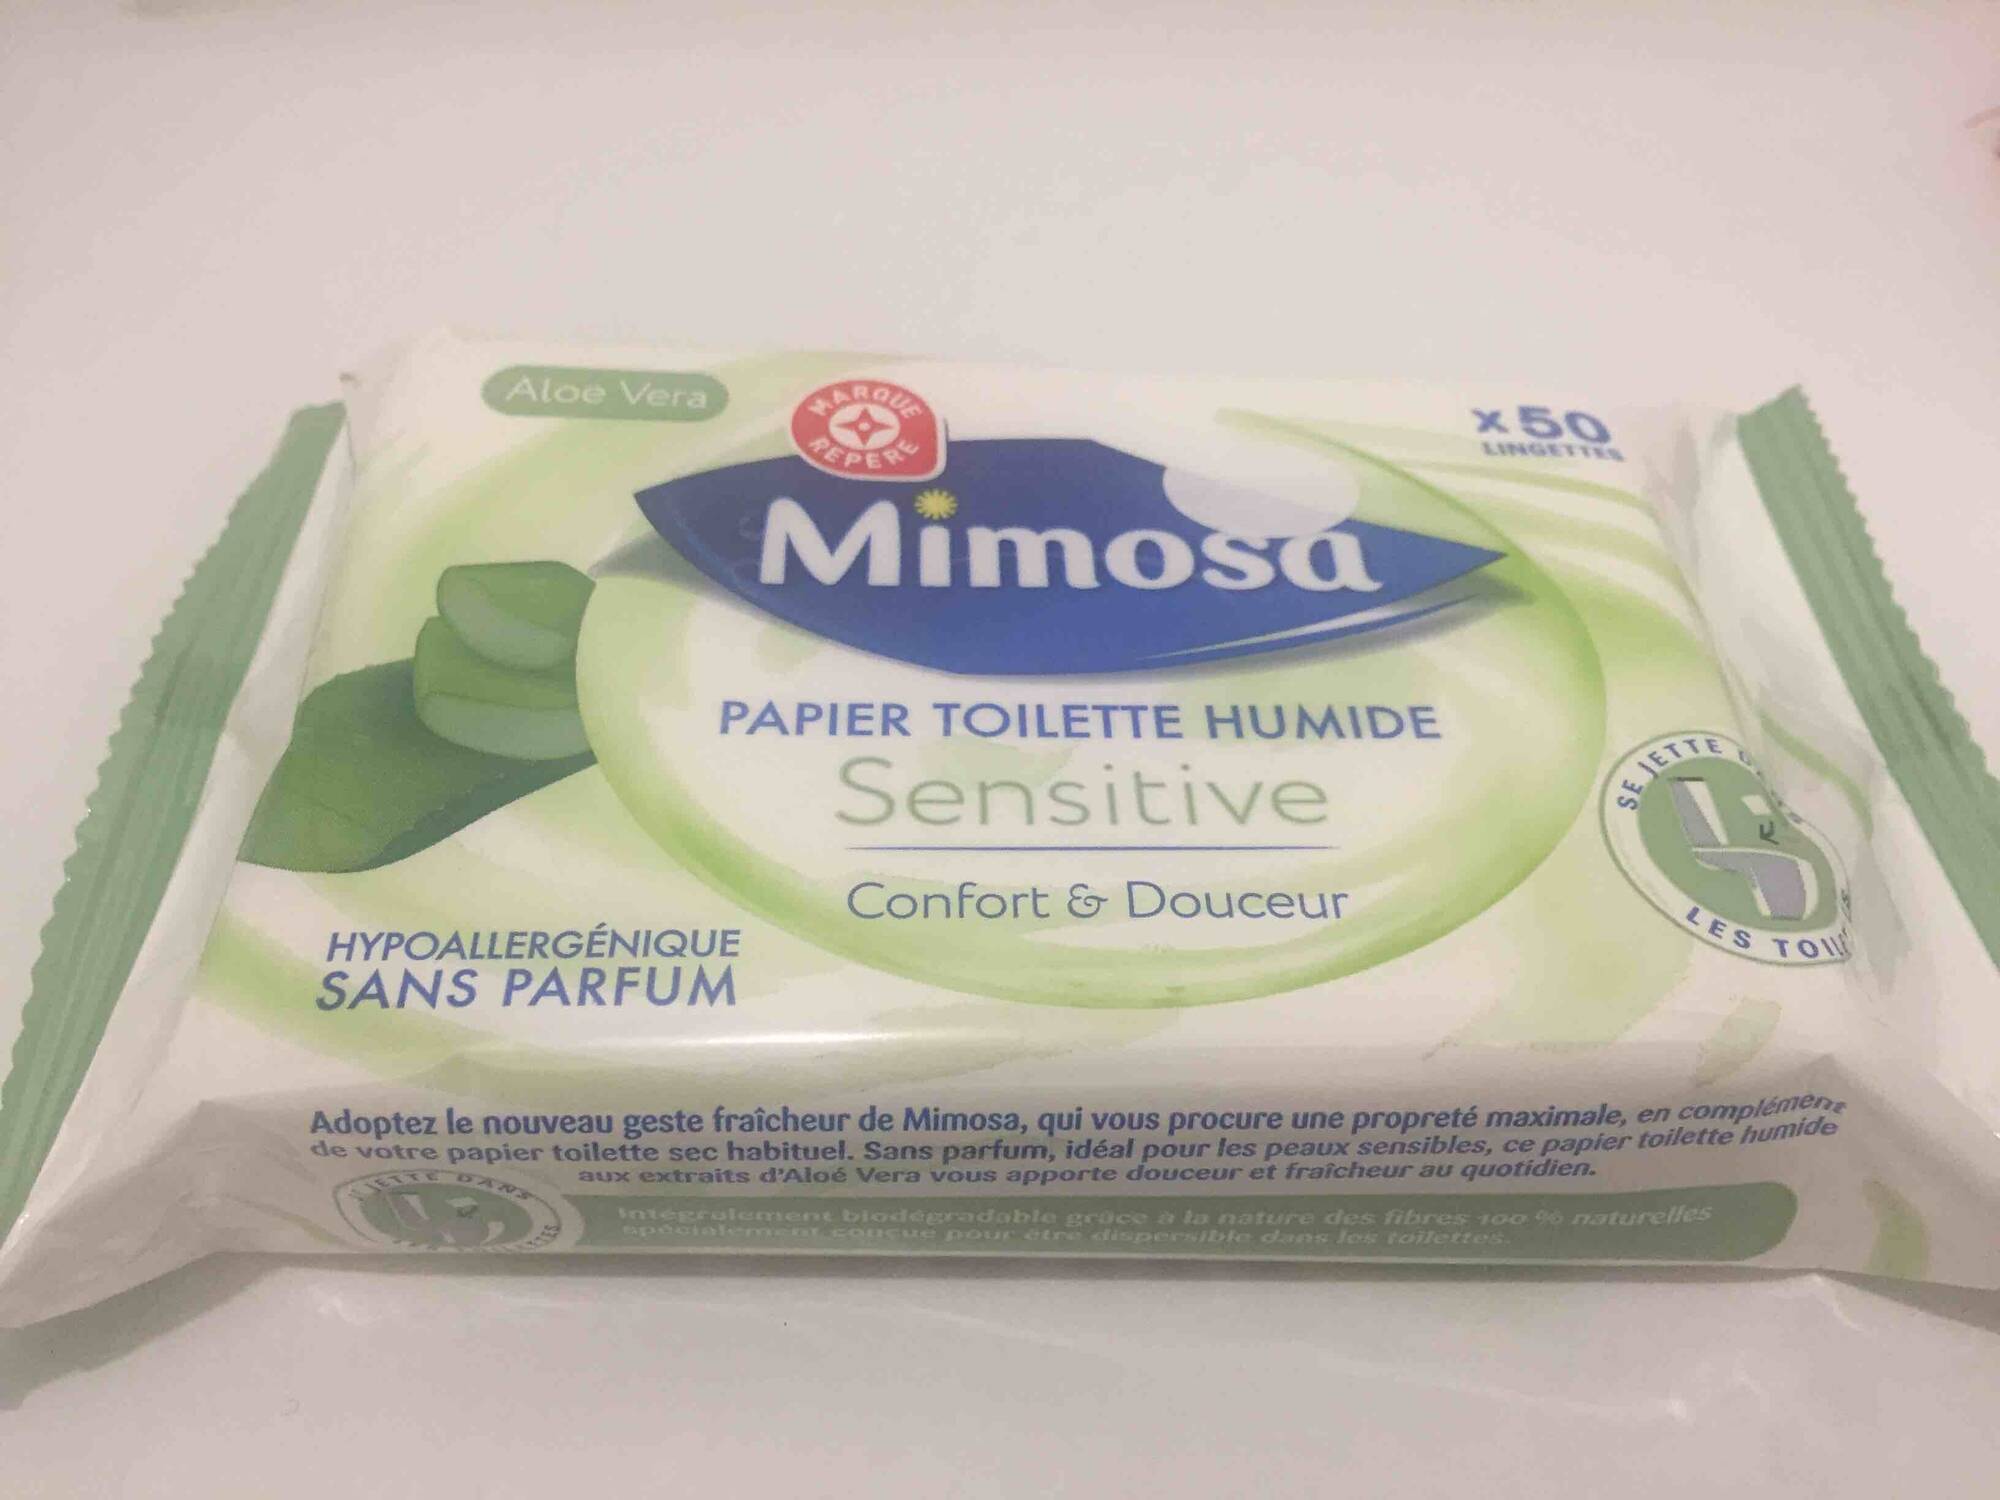 Papier Toilette Humide Sensitive - Mimosa - Leclerc Marque Repère